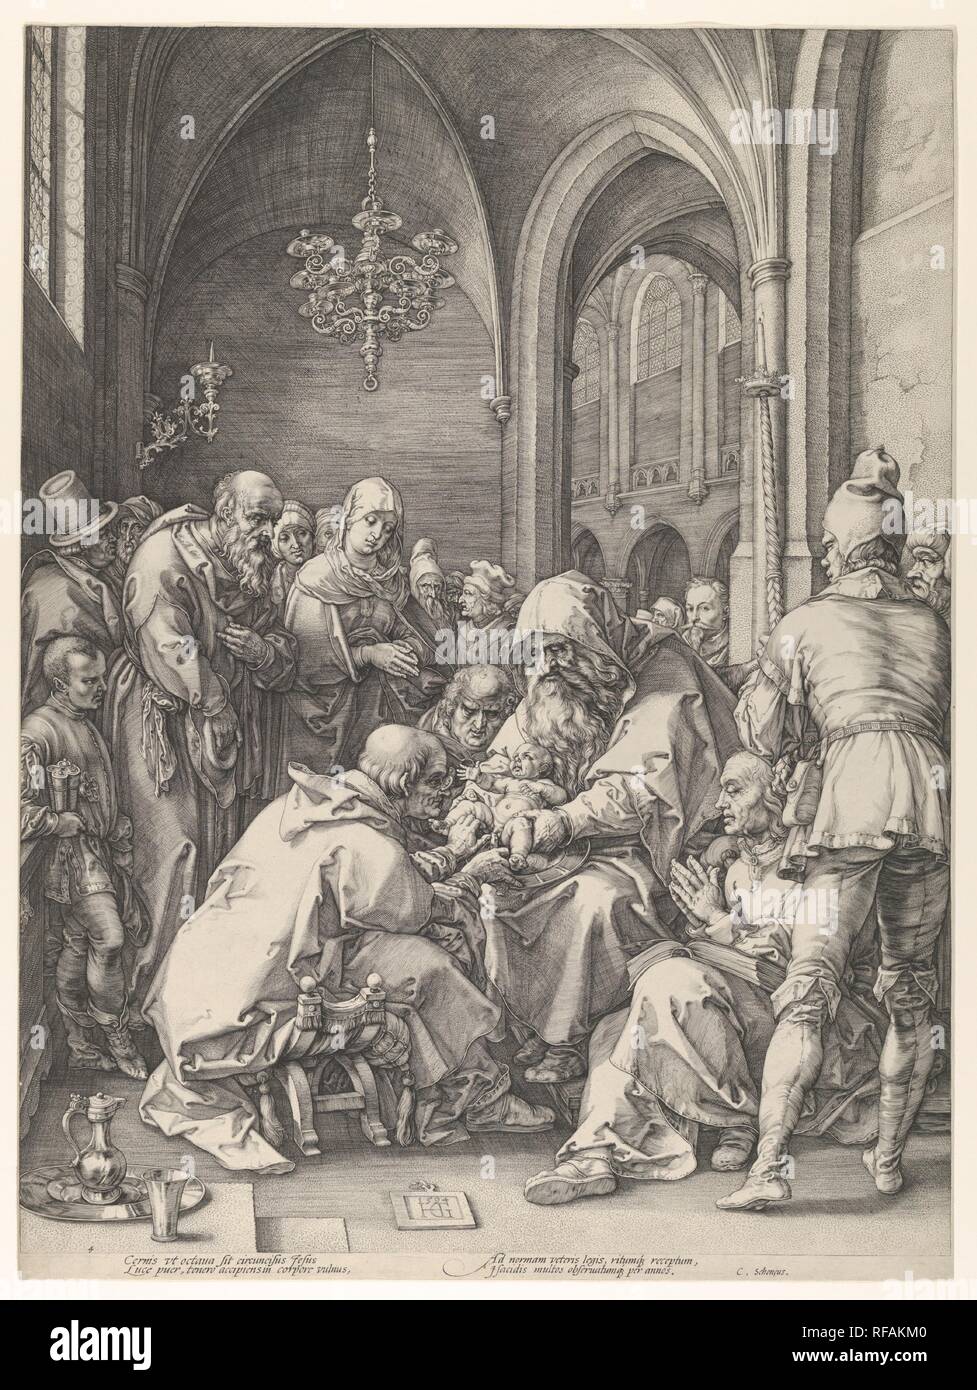 Die Beschneidung. Artist: Hendrick Goltzius (Niederländischen, Mühlbracht 1558-1617 Haarlem). Abmessungen: Bild: 18 1/4 x 13 13/16-in. (46,4 x 35,1 cm). Datum: n. d.. Die Serie, in die diese Gravur gehört, wird im Allgemeinen als Goltzius Meisterstiche oder Meisterwerk - in Analogie zu den drei berühmten Meisterstiche von seinem großen Vorgänger Albrecht Dürer bekannt. In einer bemerkenswerten Demonstration von Virtuosität in der Reihe, goltzius die Styles der verschiedenen Meister in Kompositionen seiner eigenen Erfindung imitiert. In diesem Fall sah er auf die Zusammensetzung der Dürers Holzschnitt Beschneidung aus der Serie der Lif Stockfoto